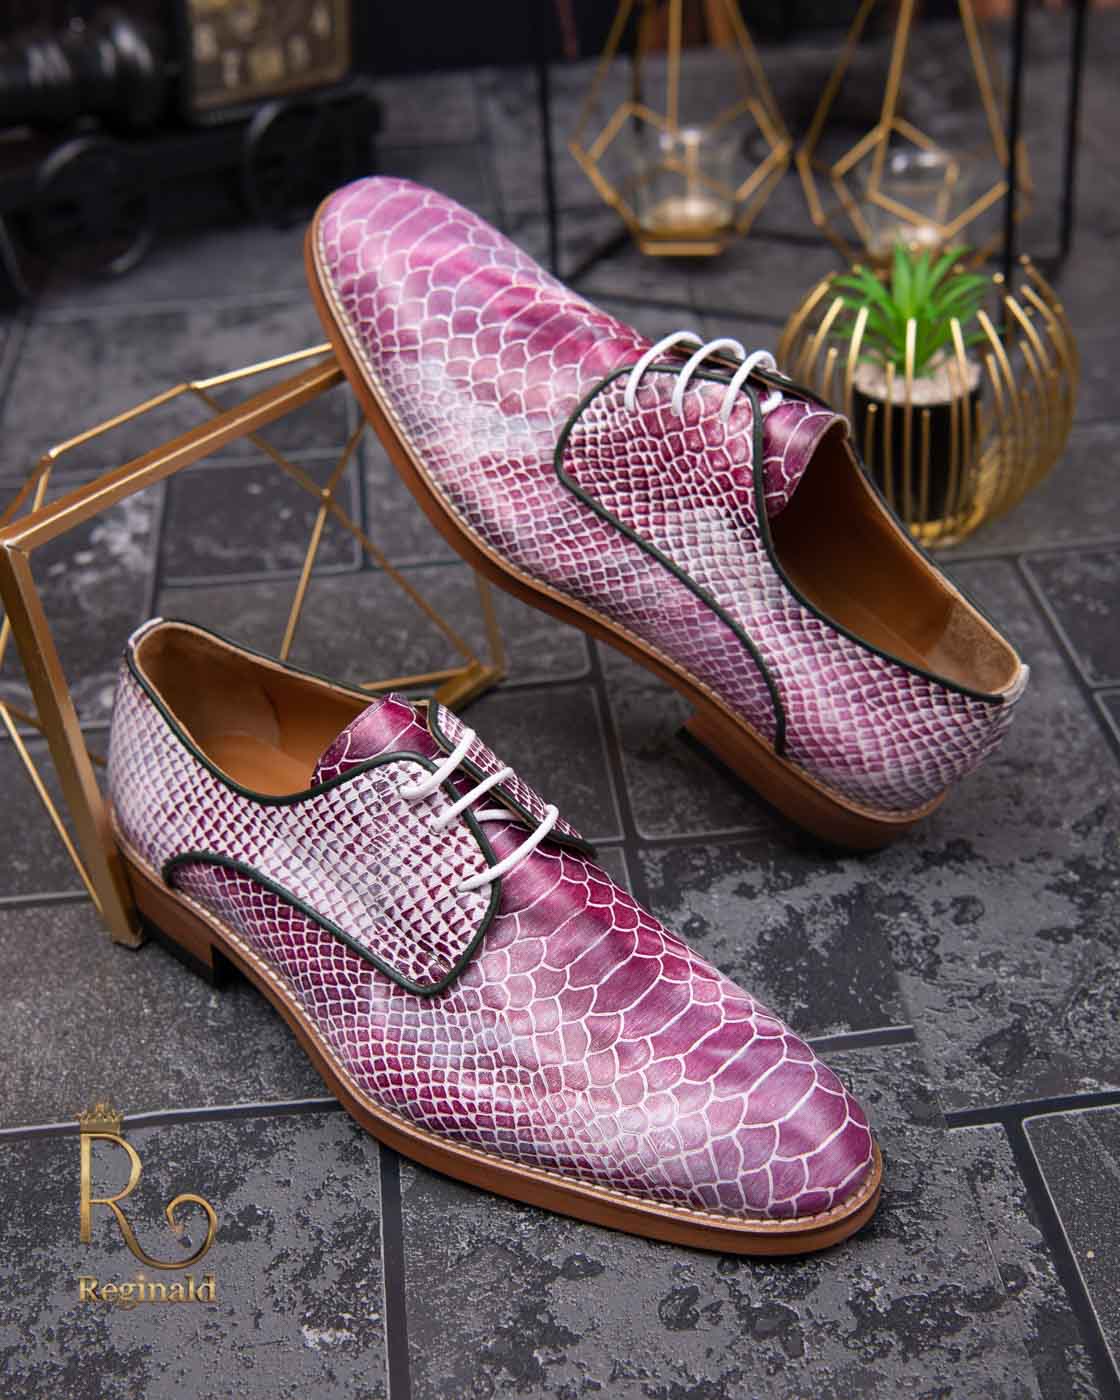 Pantofi Reginald de bărbați, cu șiret, pink/white, piele naturala - P1464